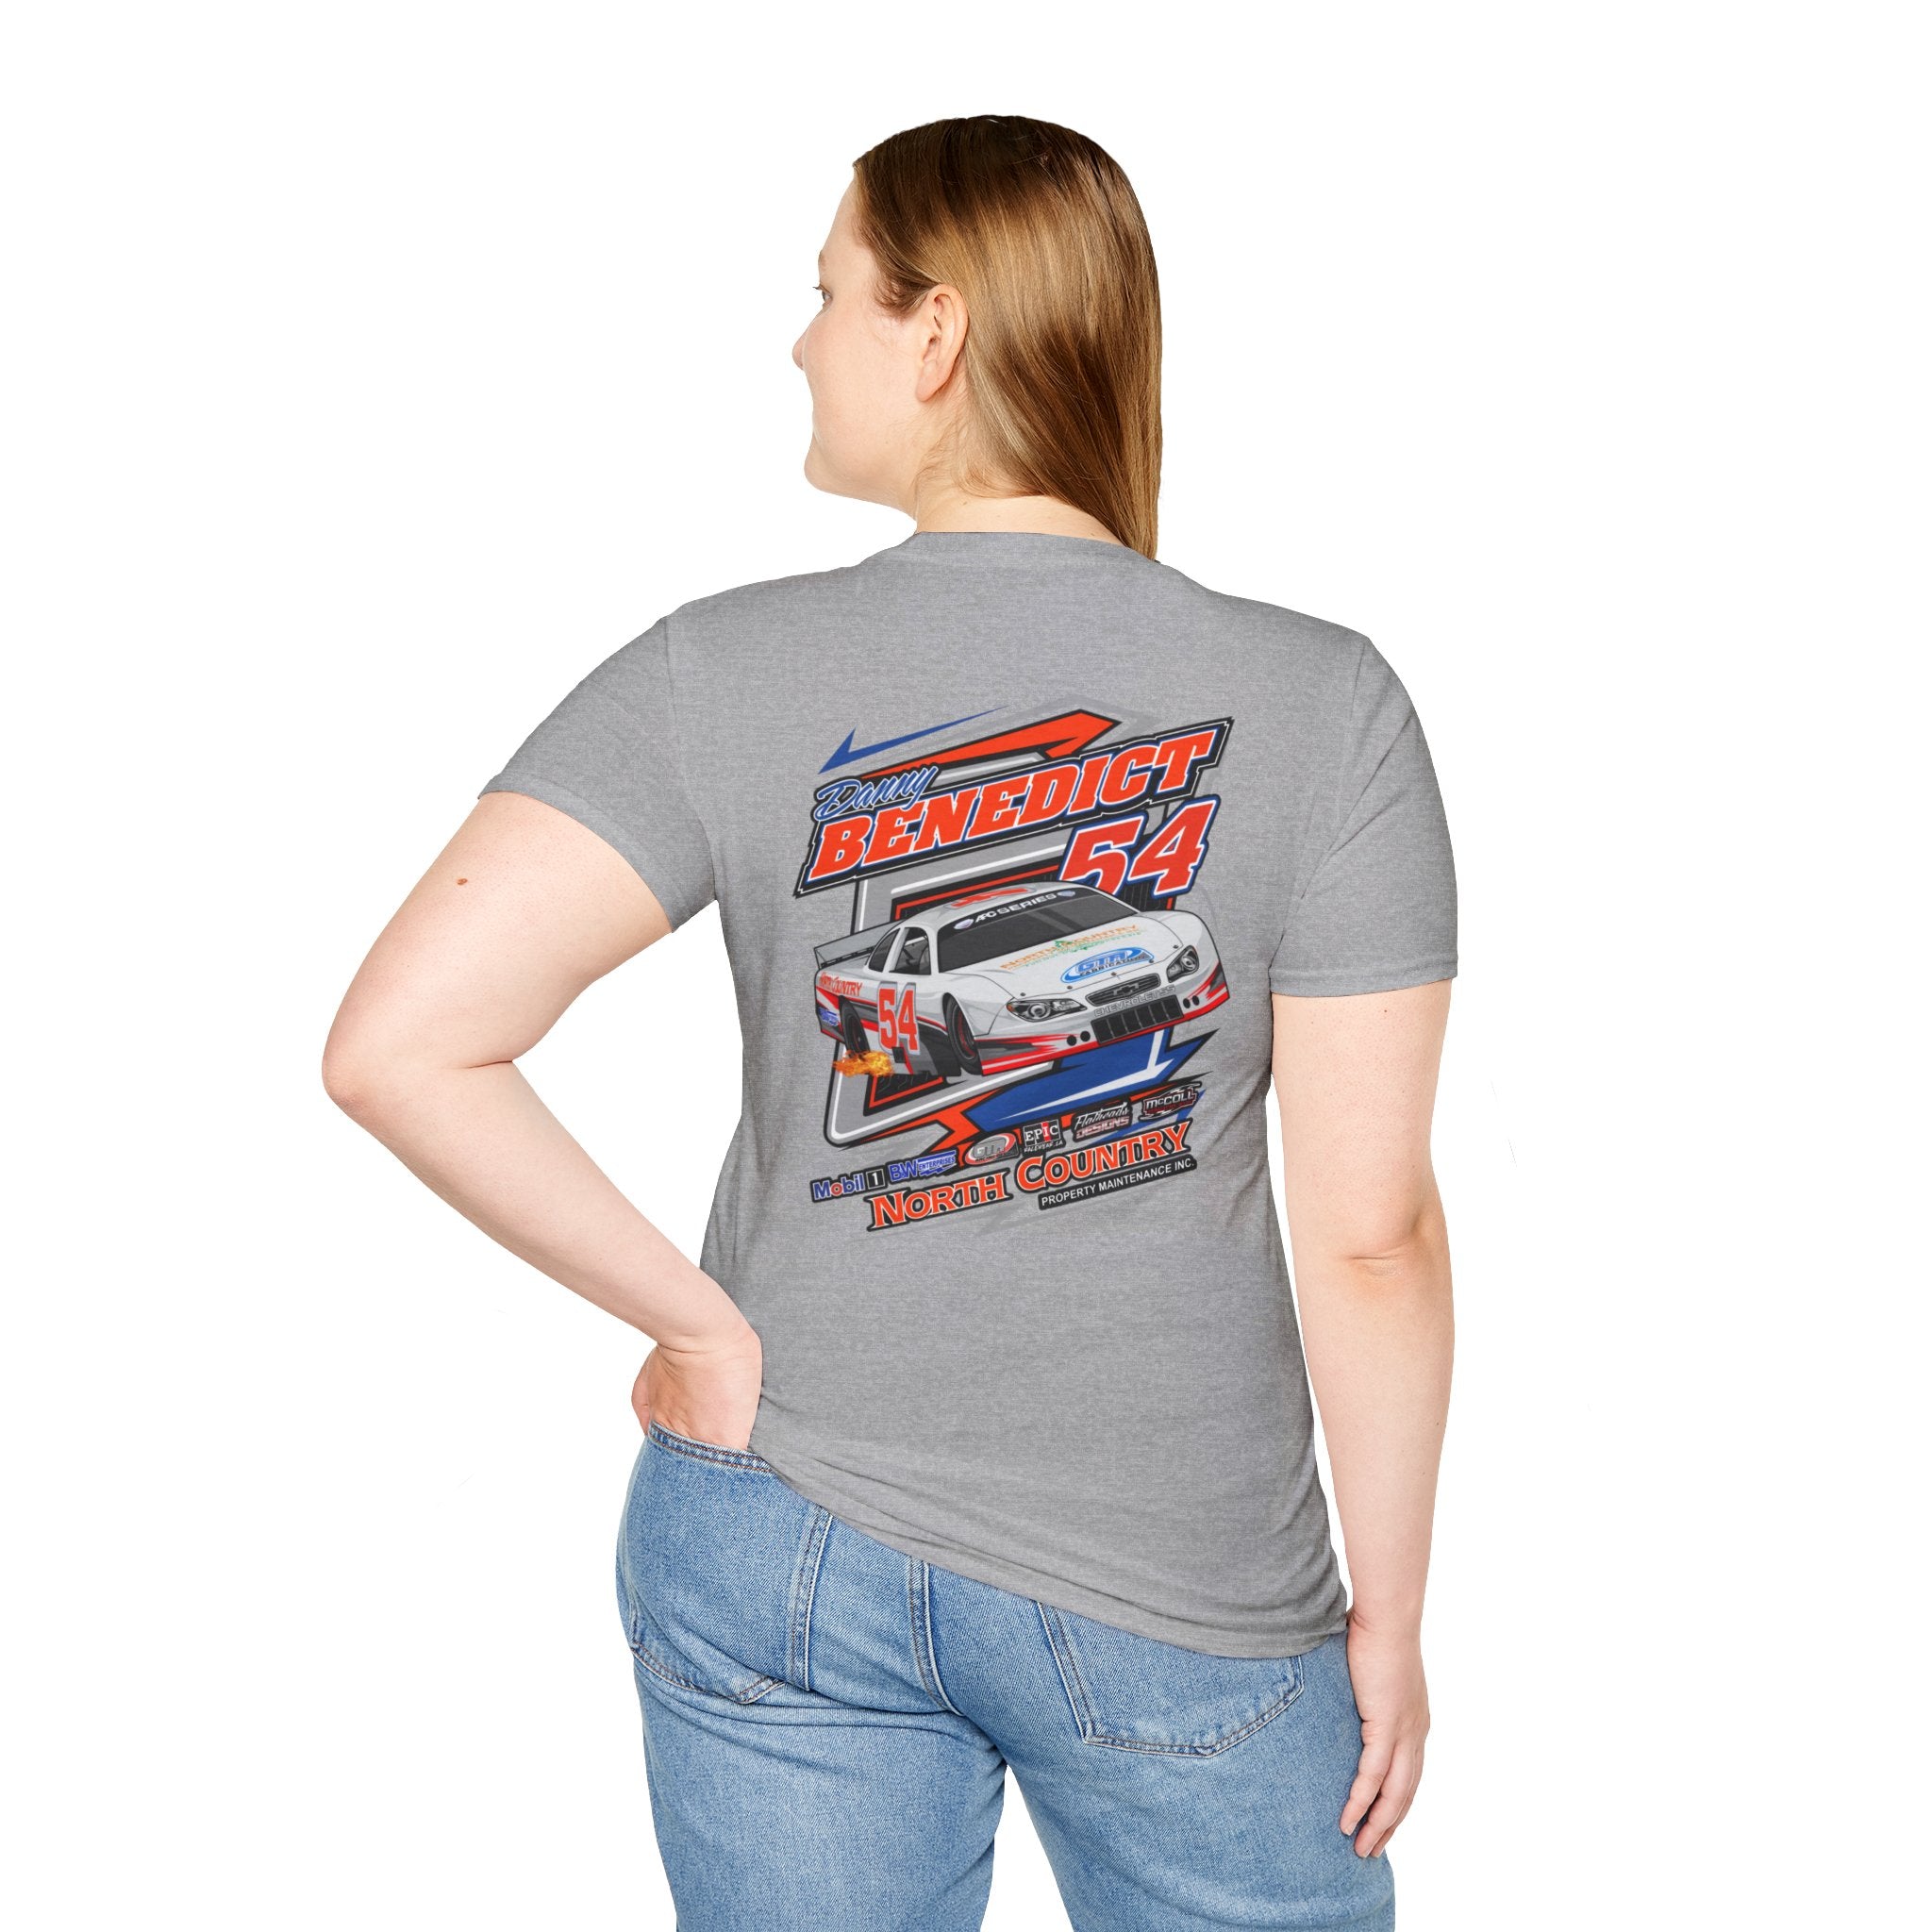 Danny Benedict Racing Ladies Tshirt